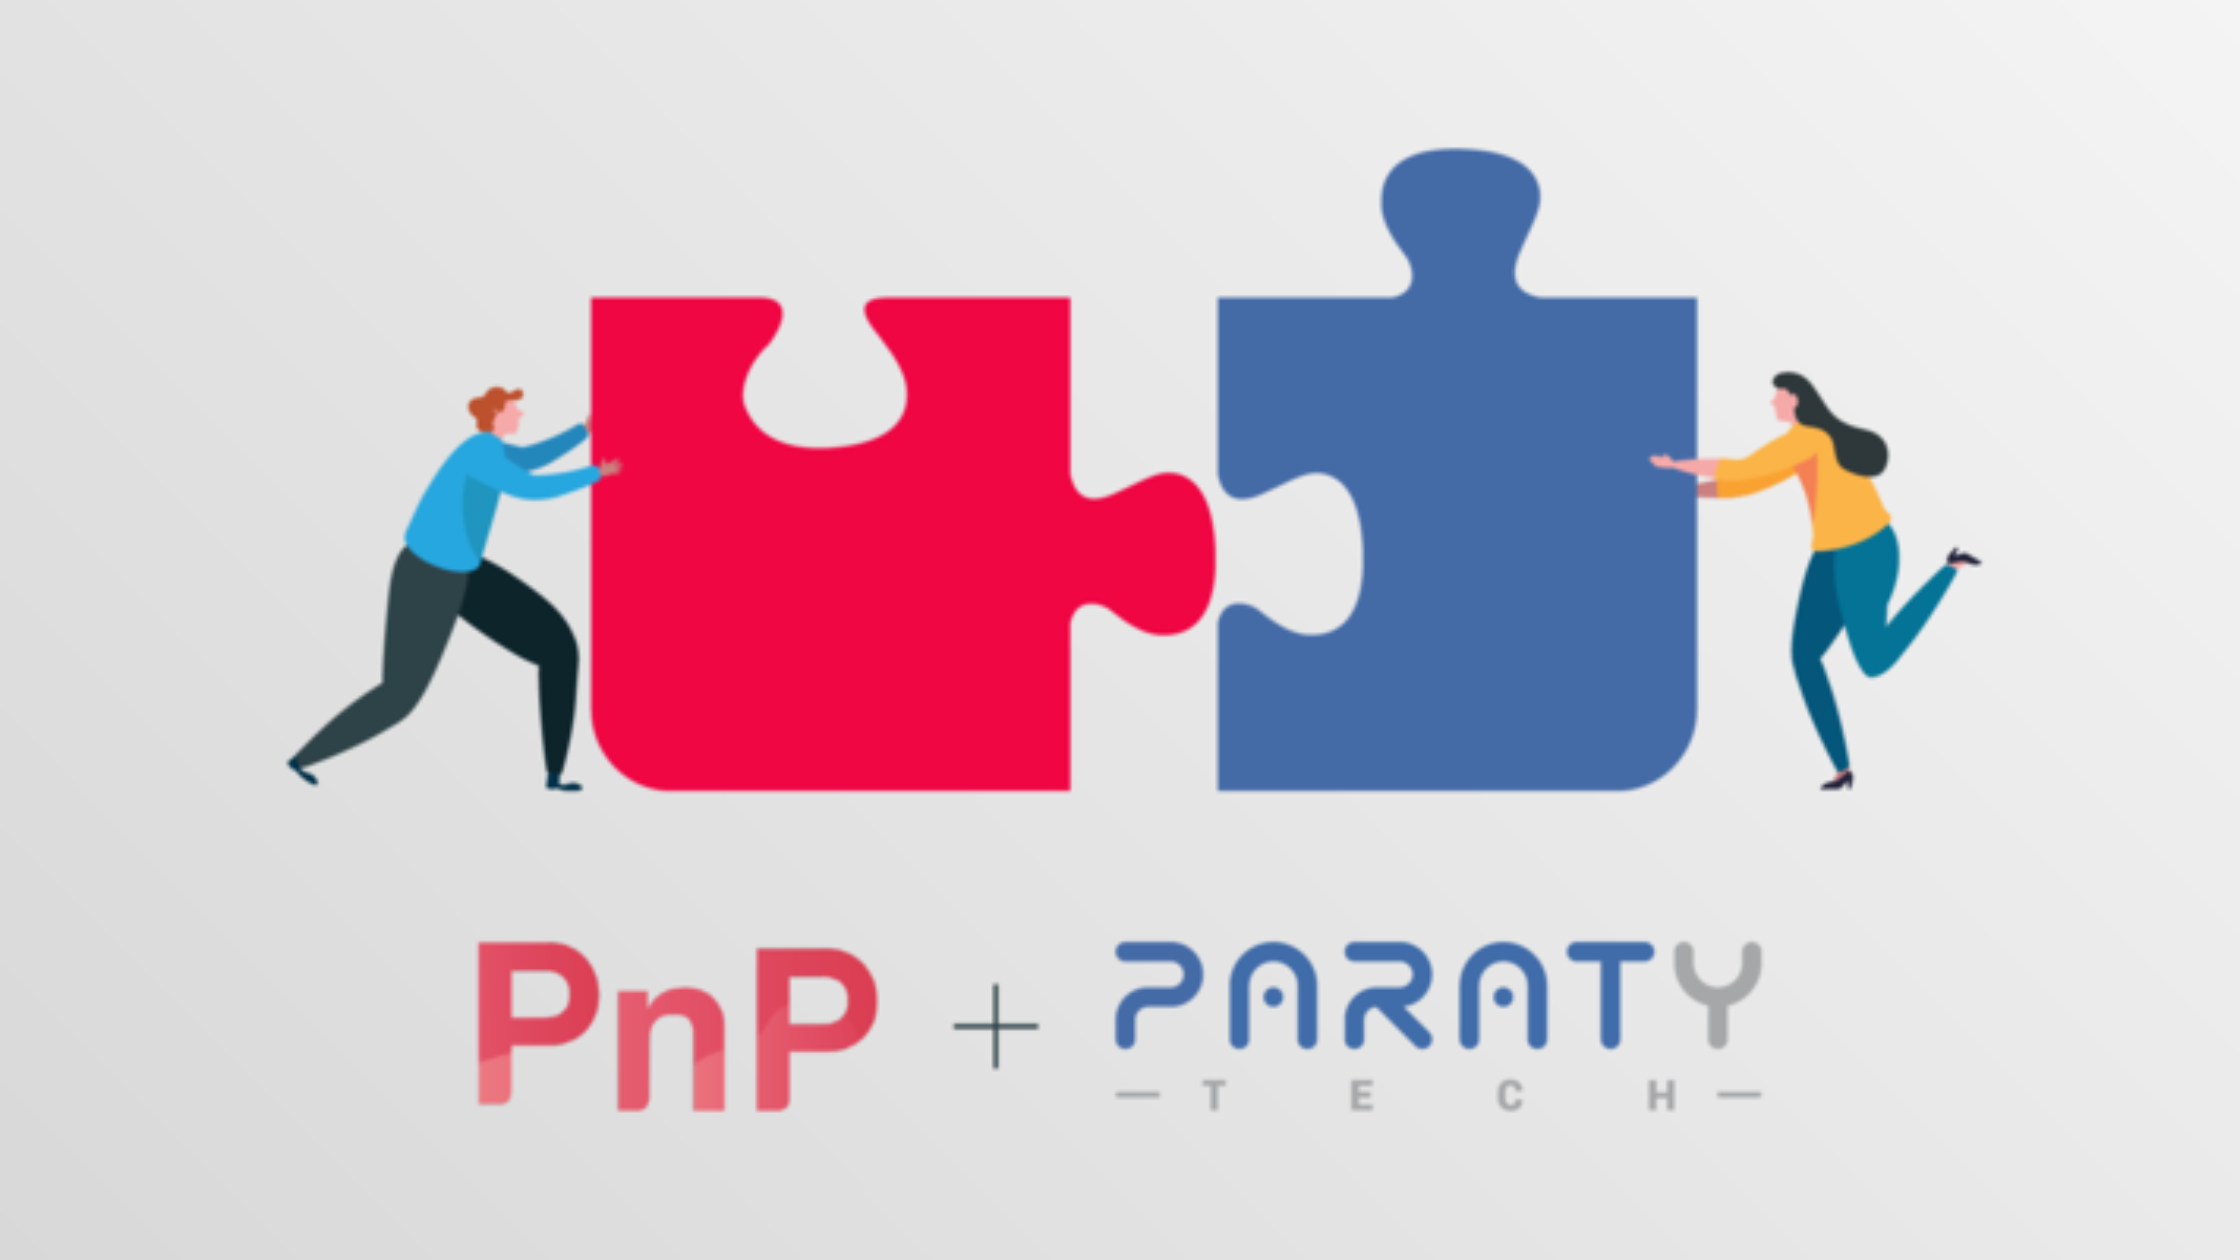 un hombre y una mujer sostienen dos piezas de un rompecabezas junto al texto pnp + paraty tech